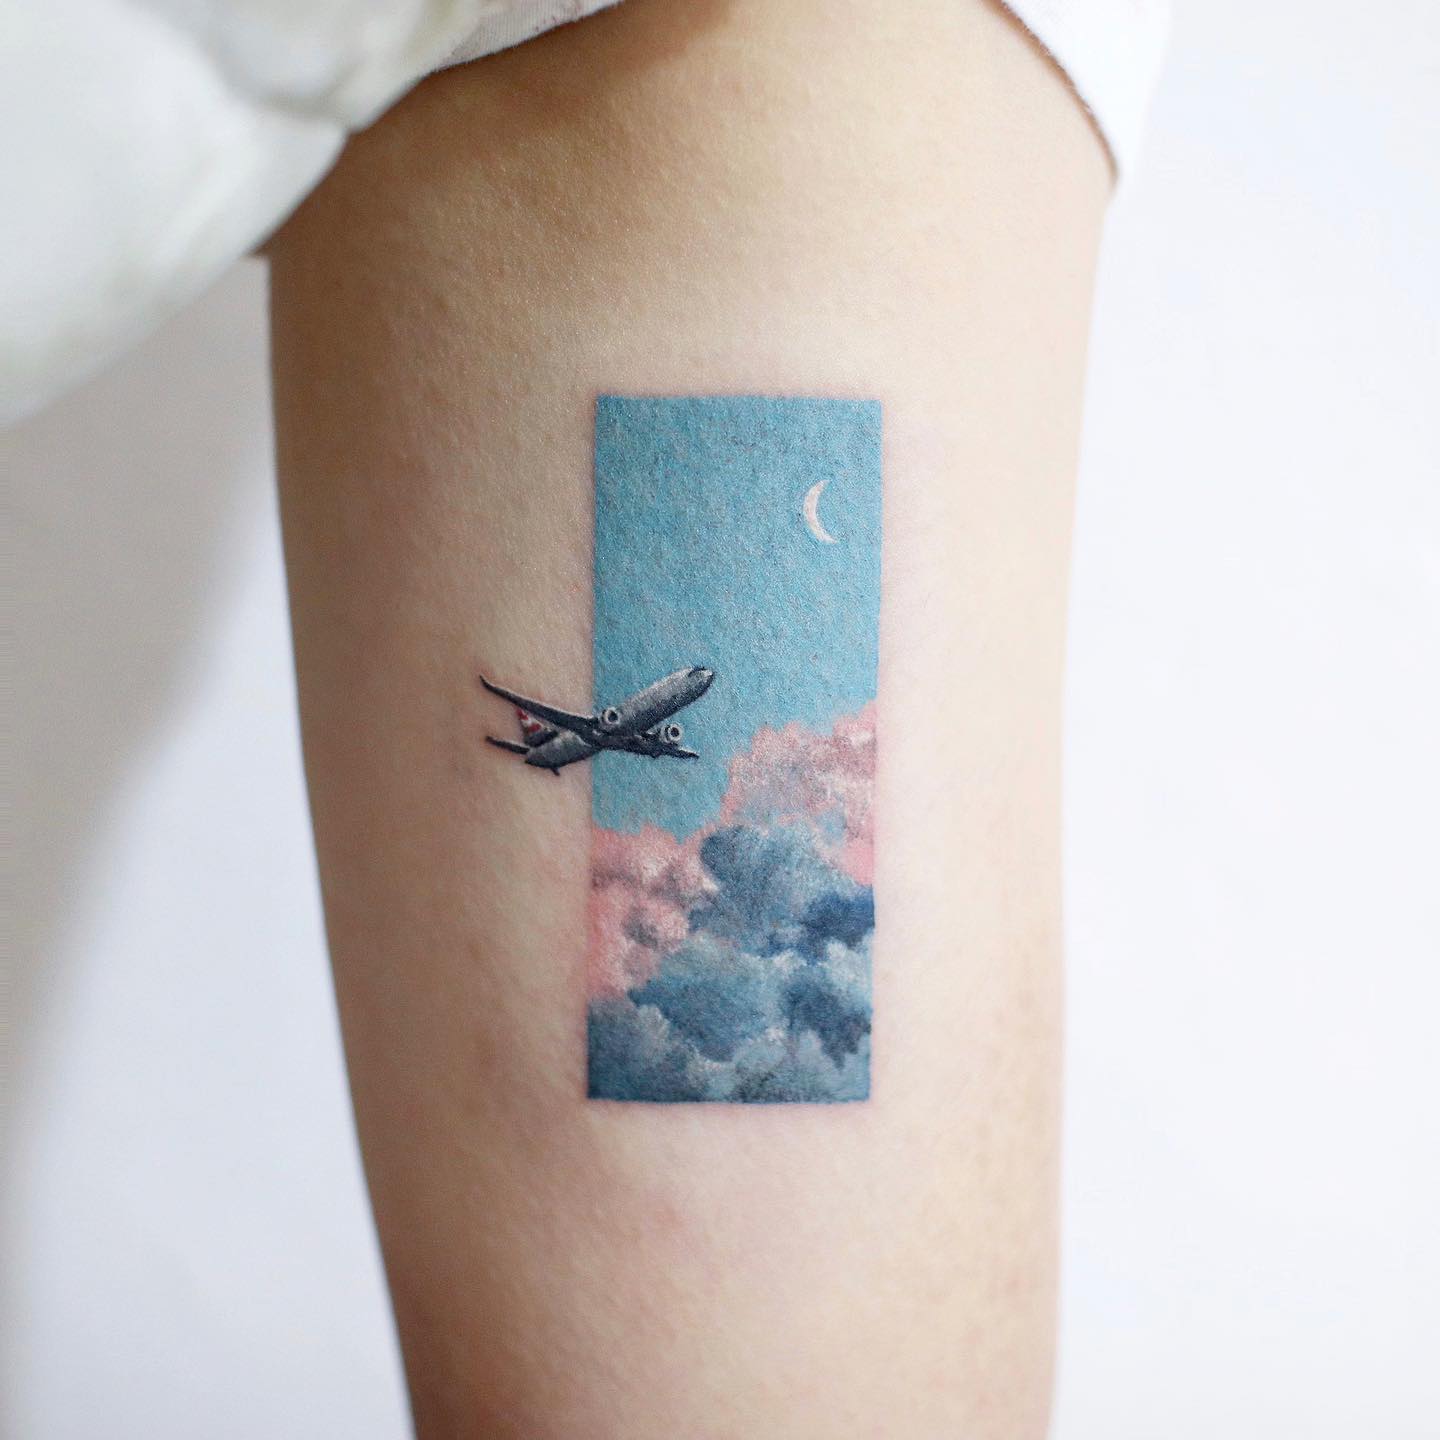 Tatuaje de un avión inspirado en los viajes